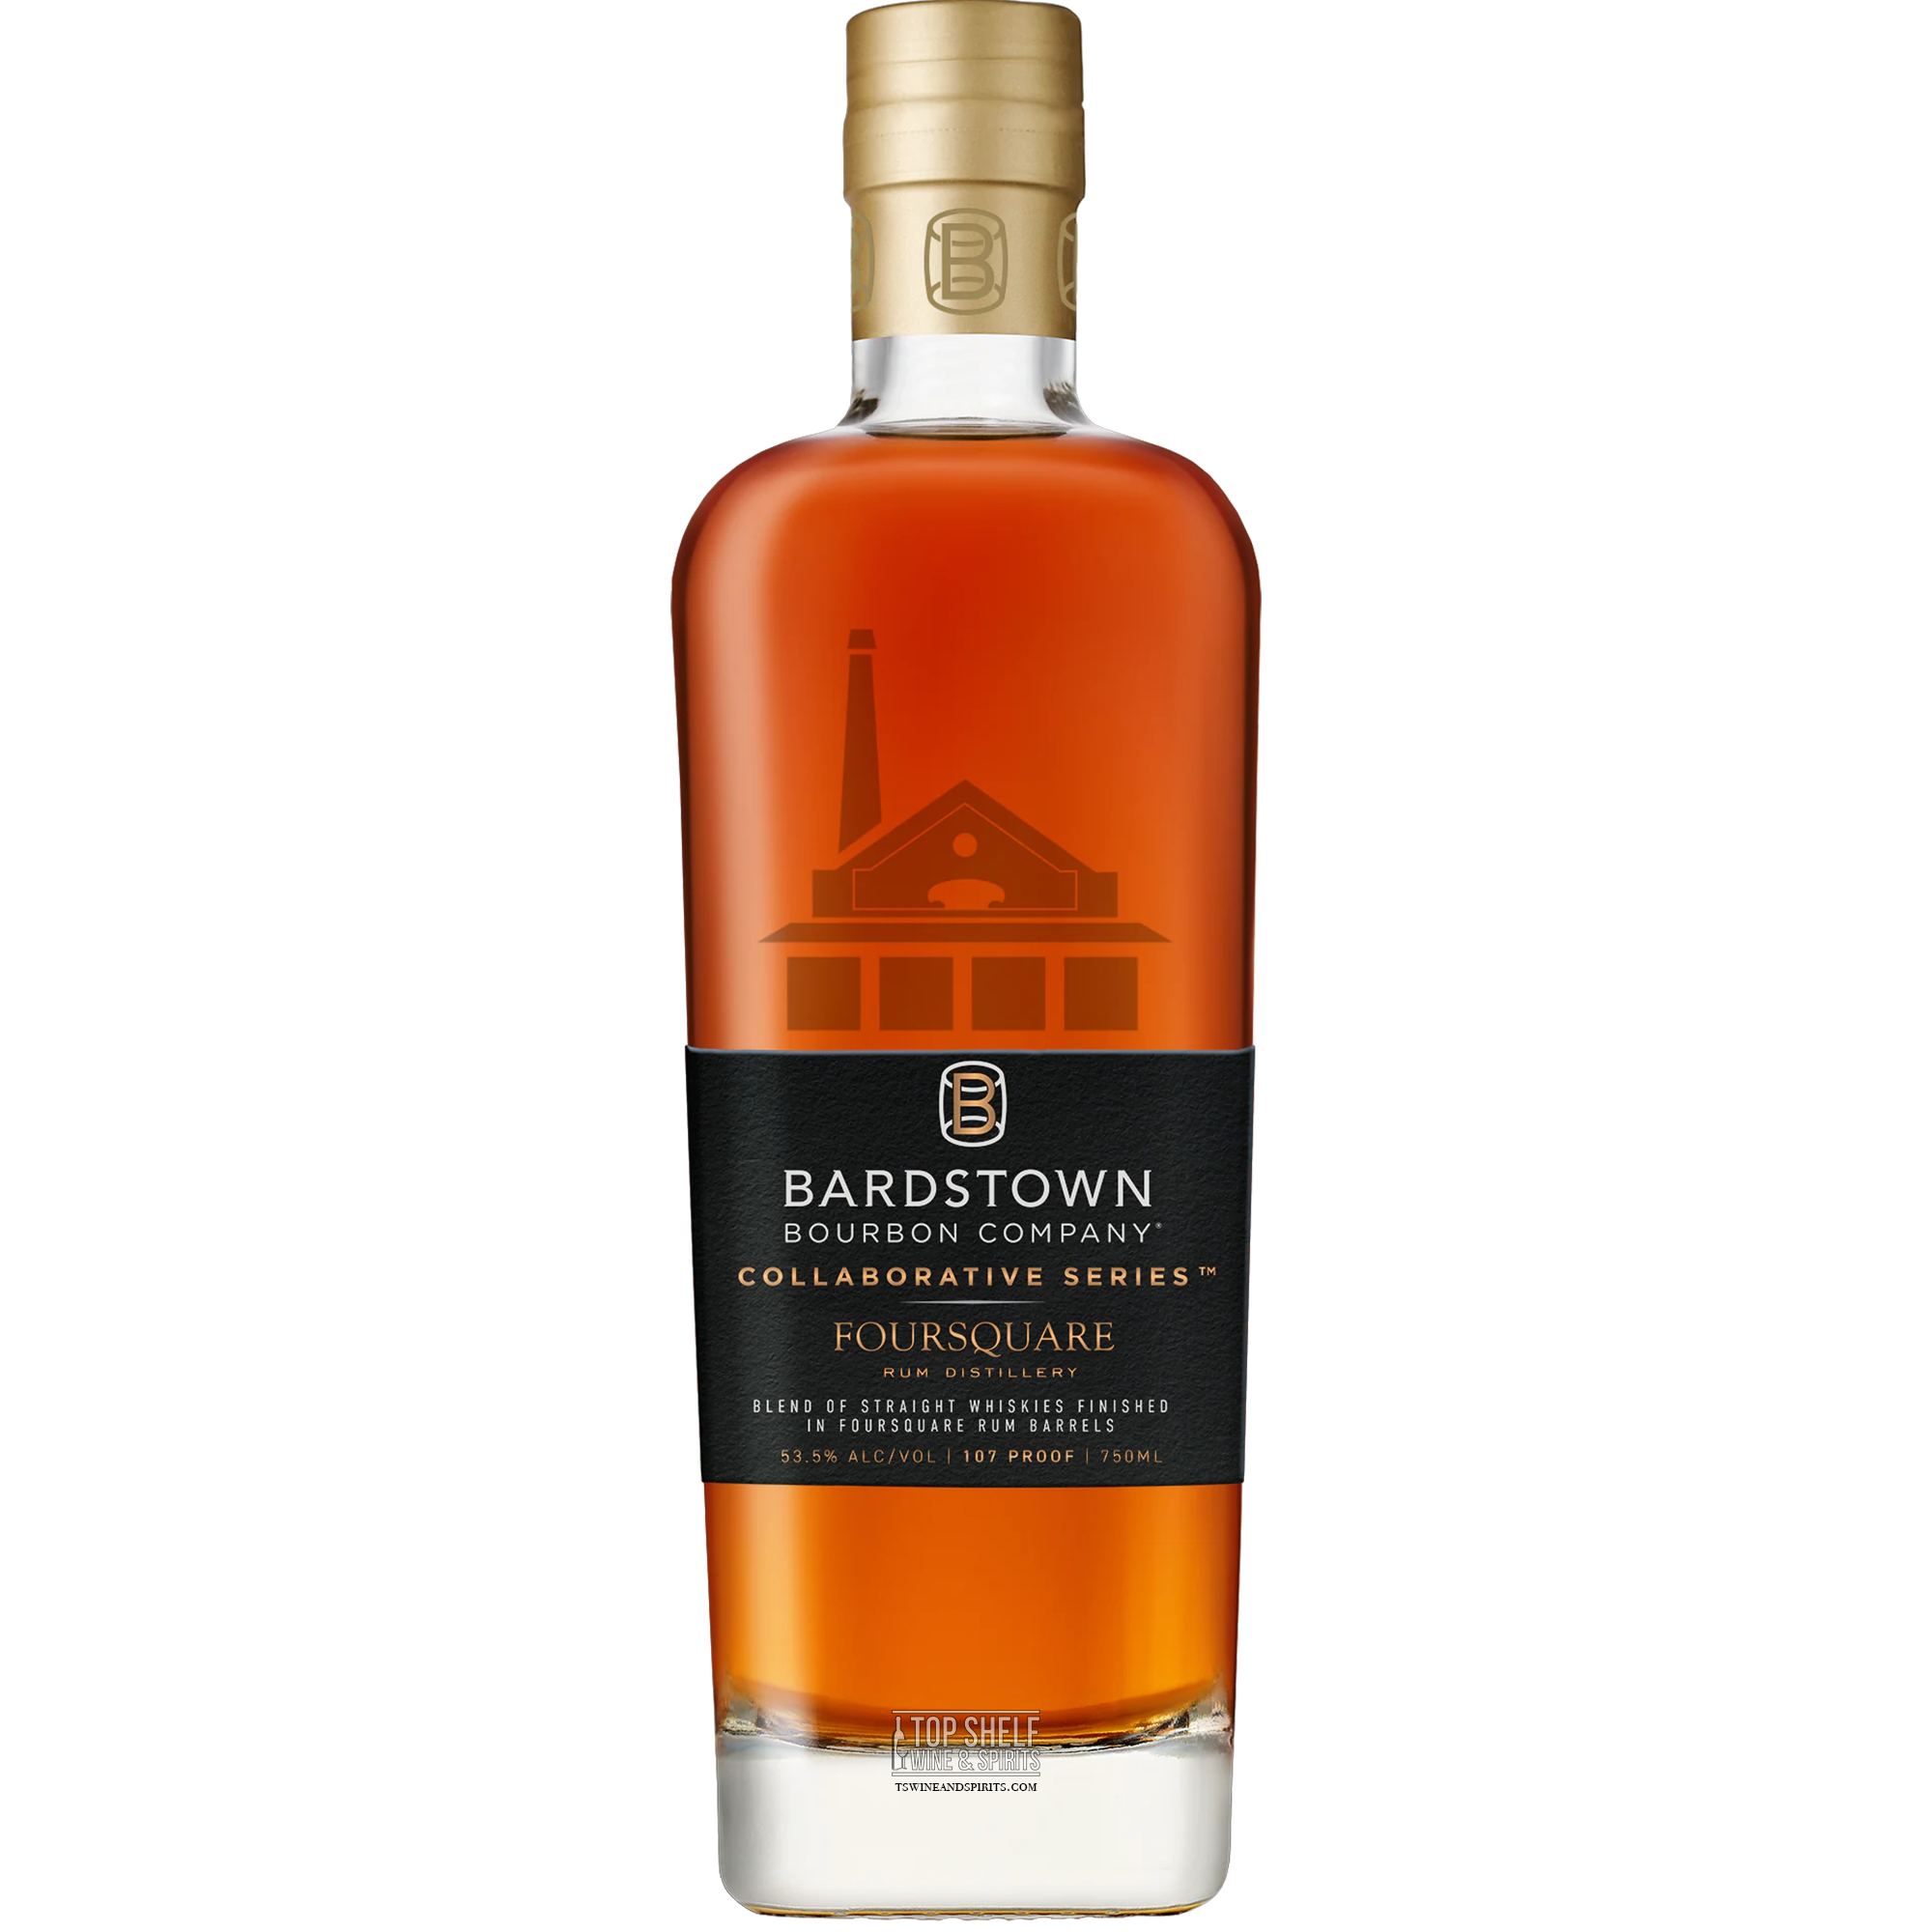 Bardstown Bourbon Foursquare Collaborative Edition